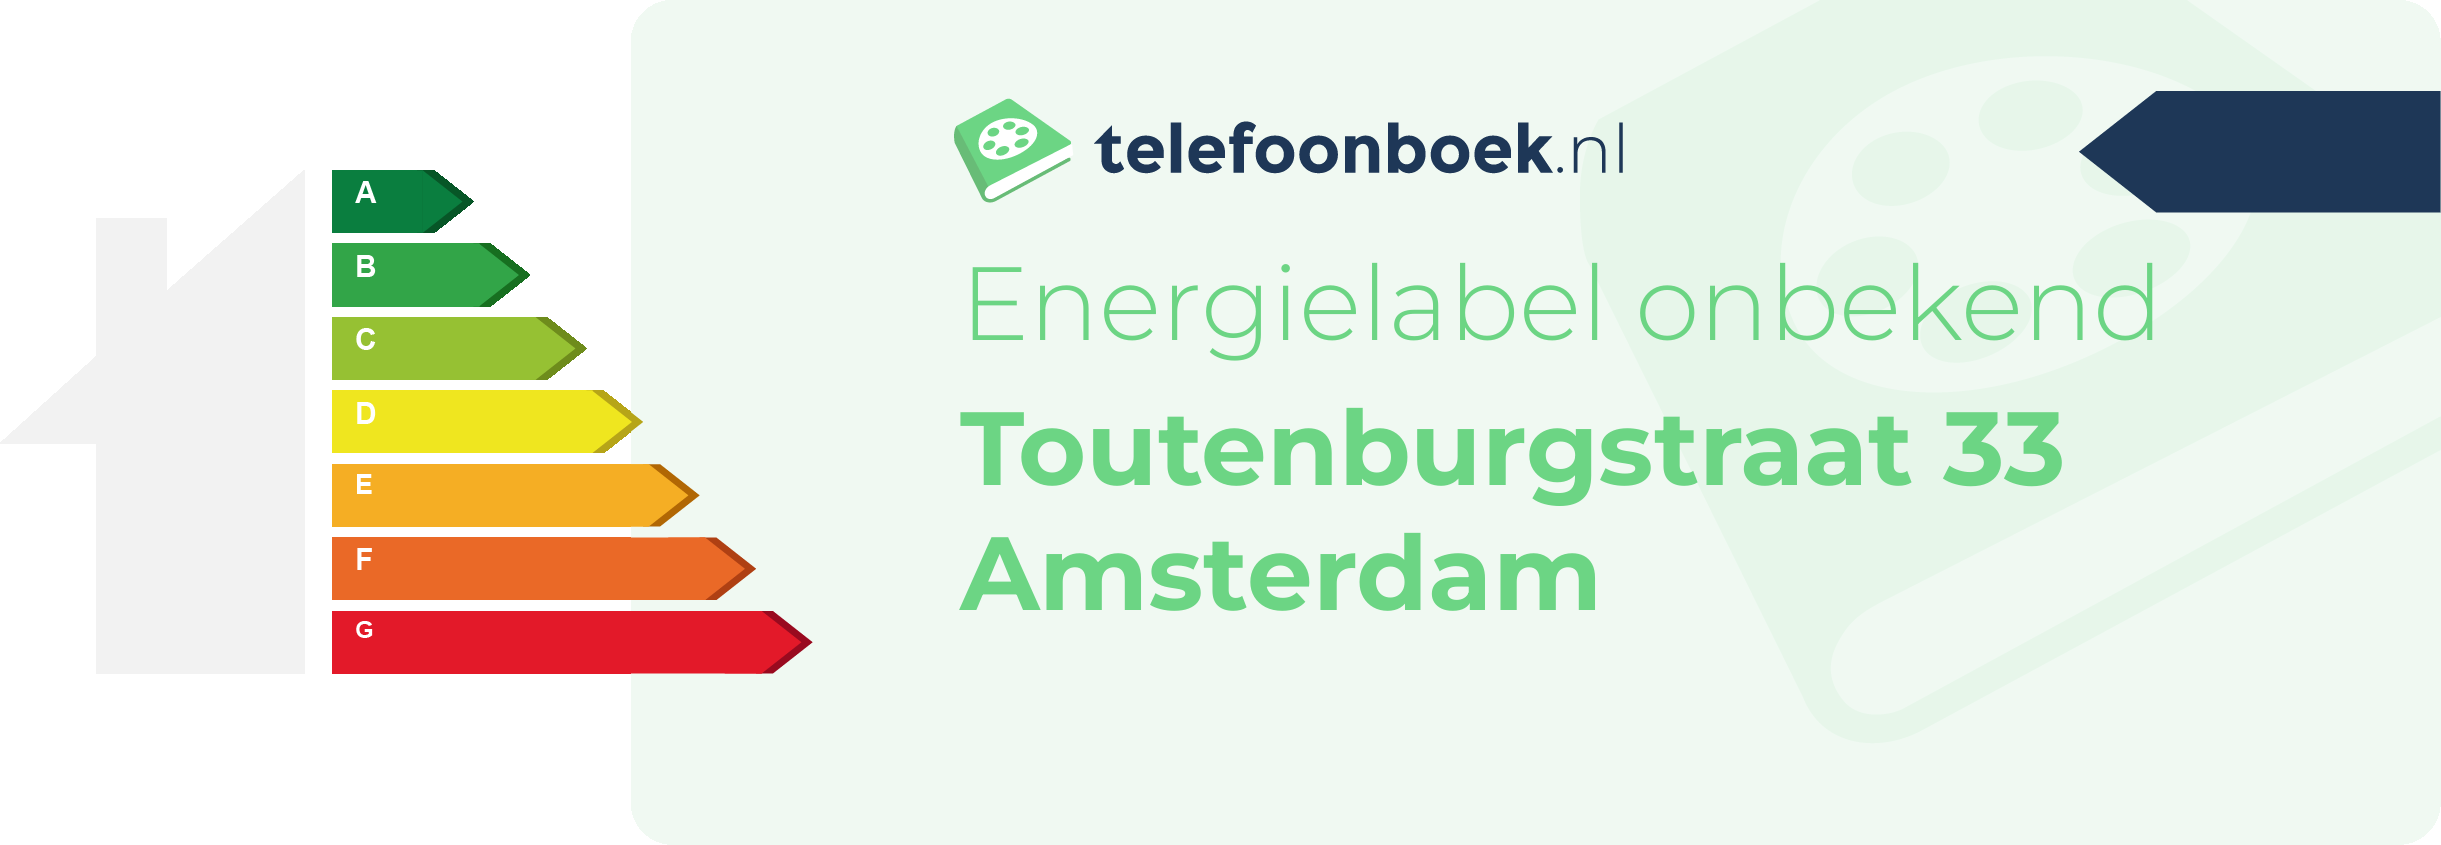 Energielabel Toutenburgstraat 33 Amsterdam